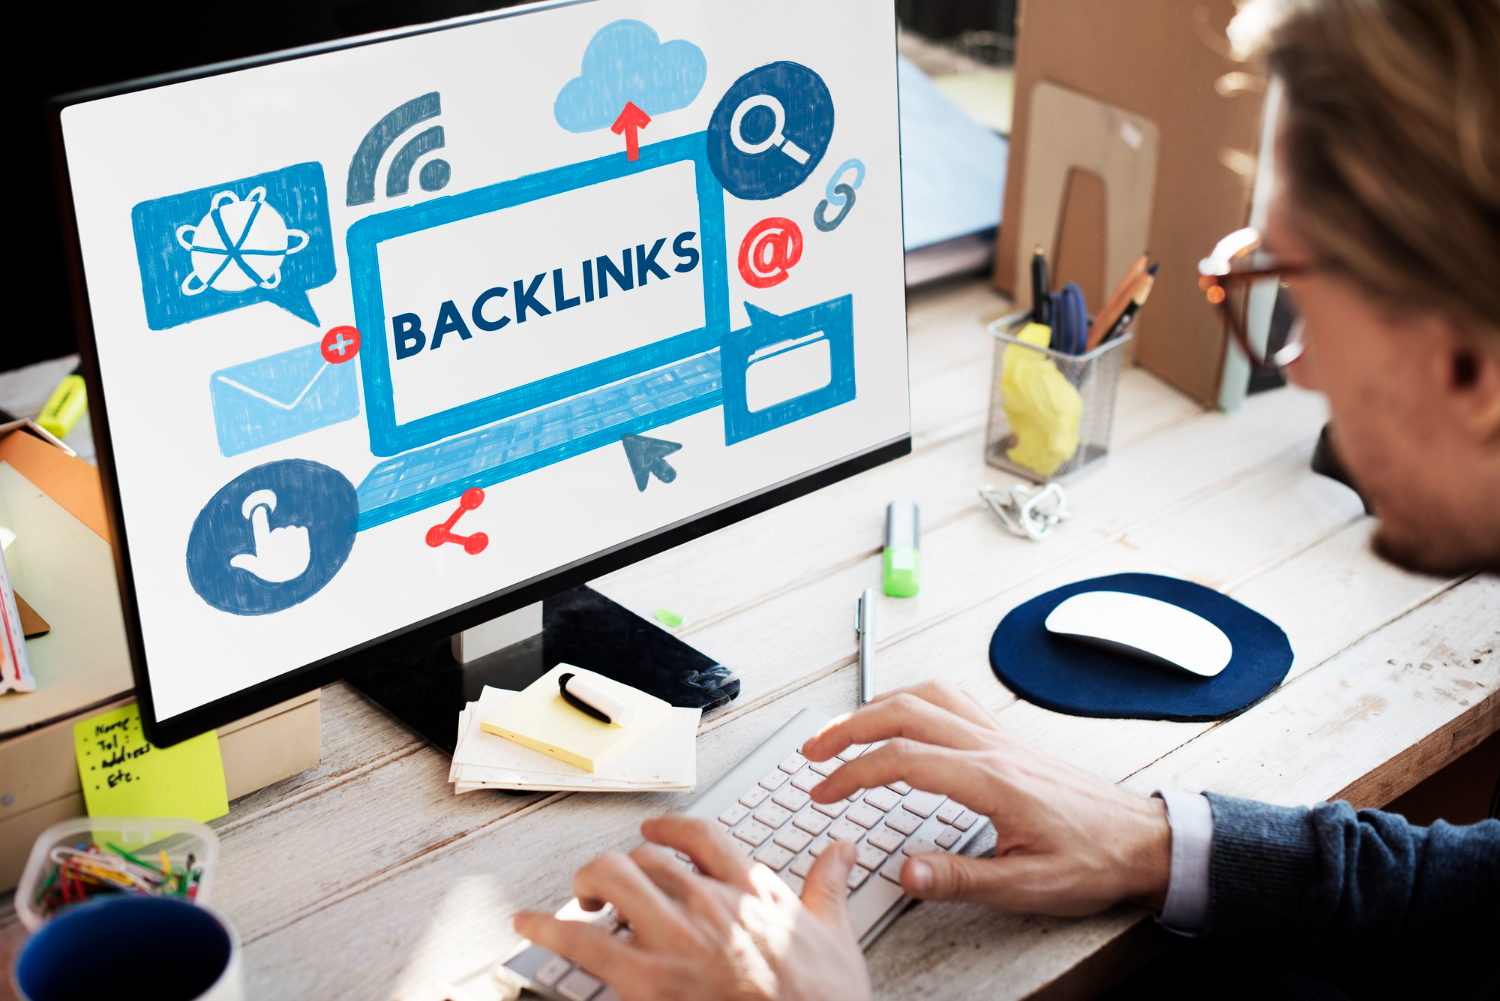 backlink-hyperlink-networking-internet-online-technology-concept